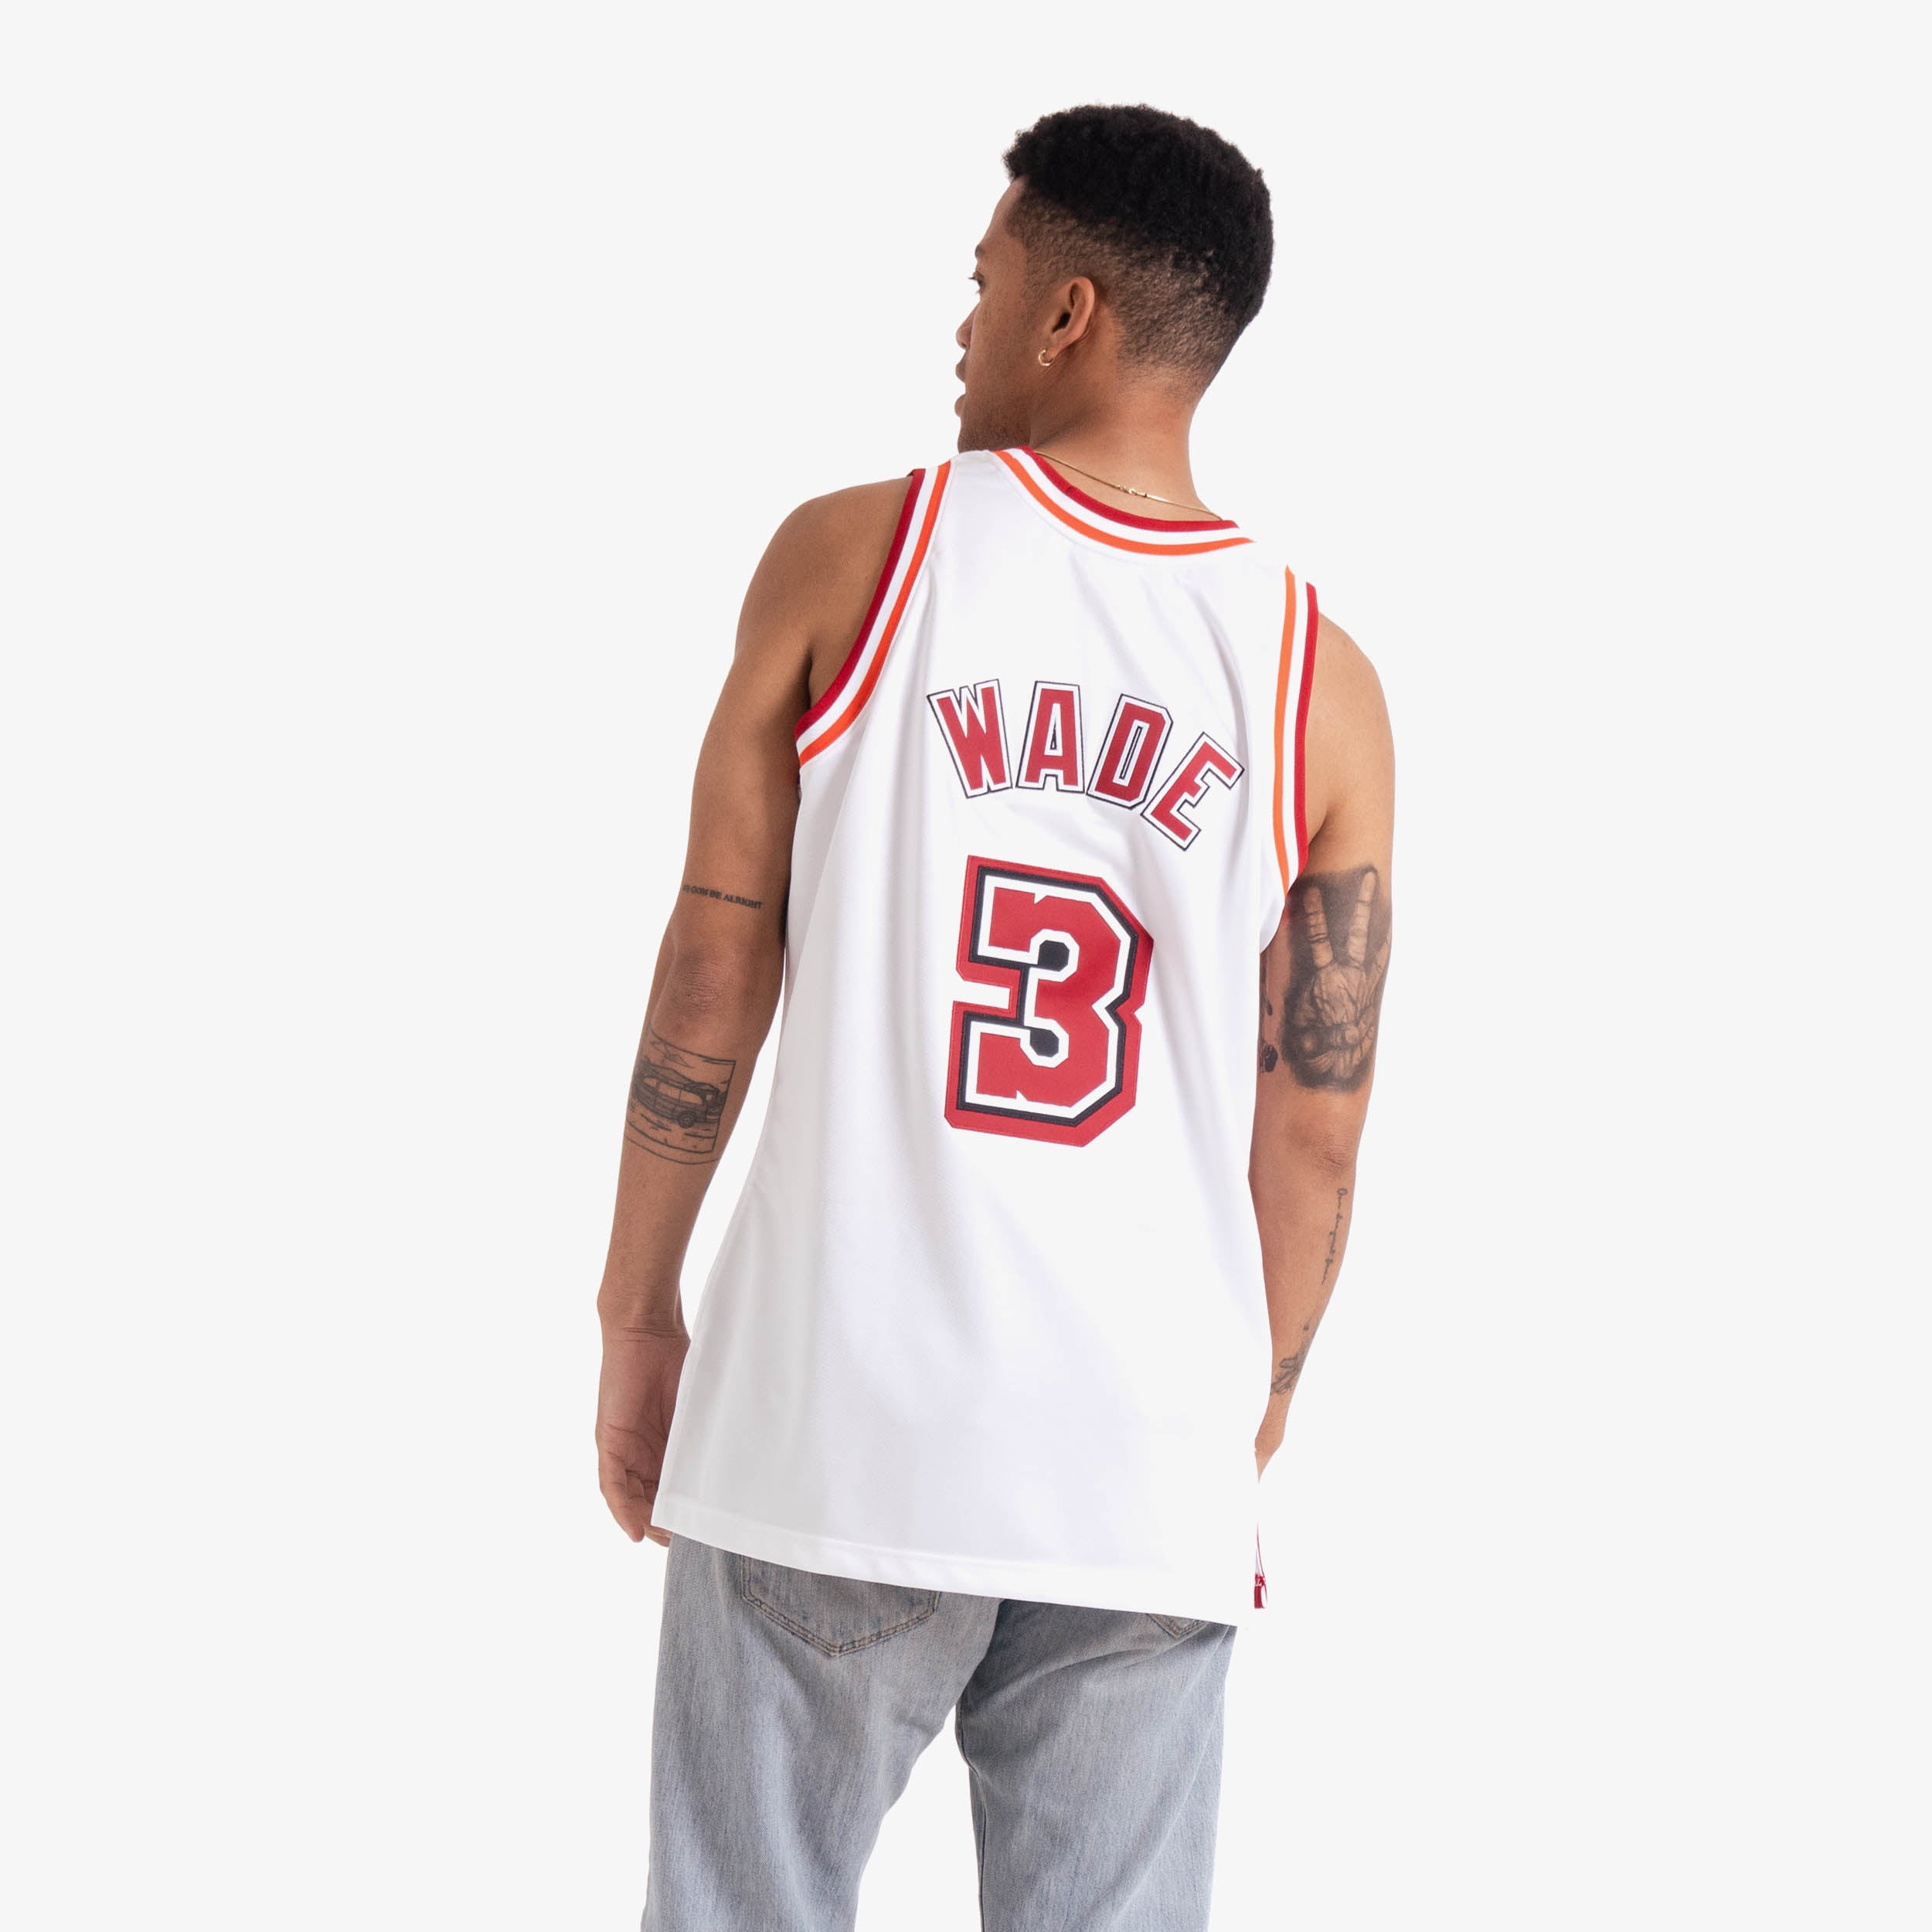 Miami Heat: Dwyane Wade 2006/07 White Adidas Stitched Jersey (L